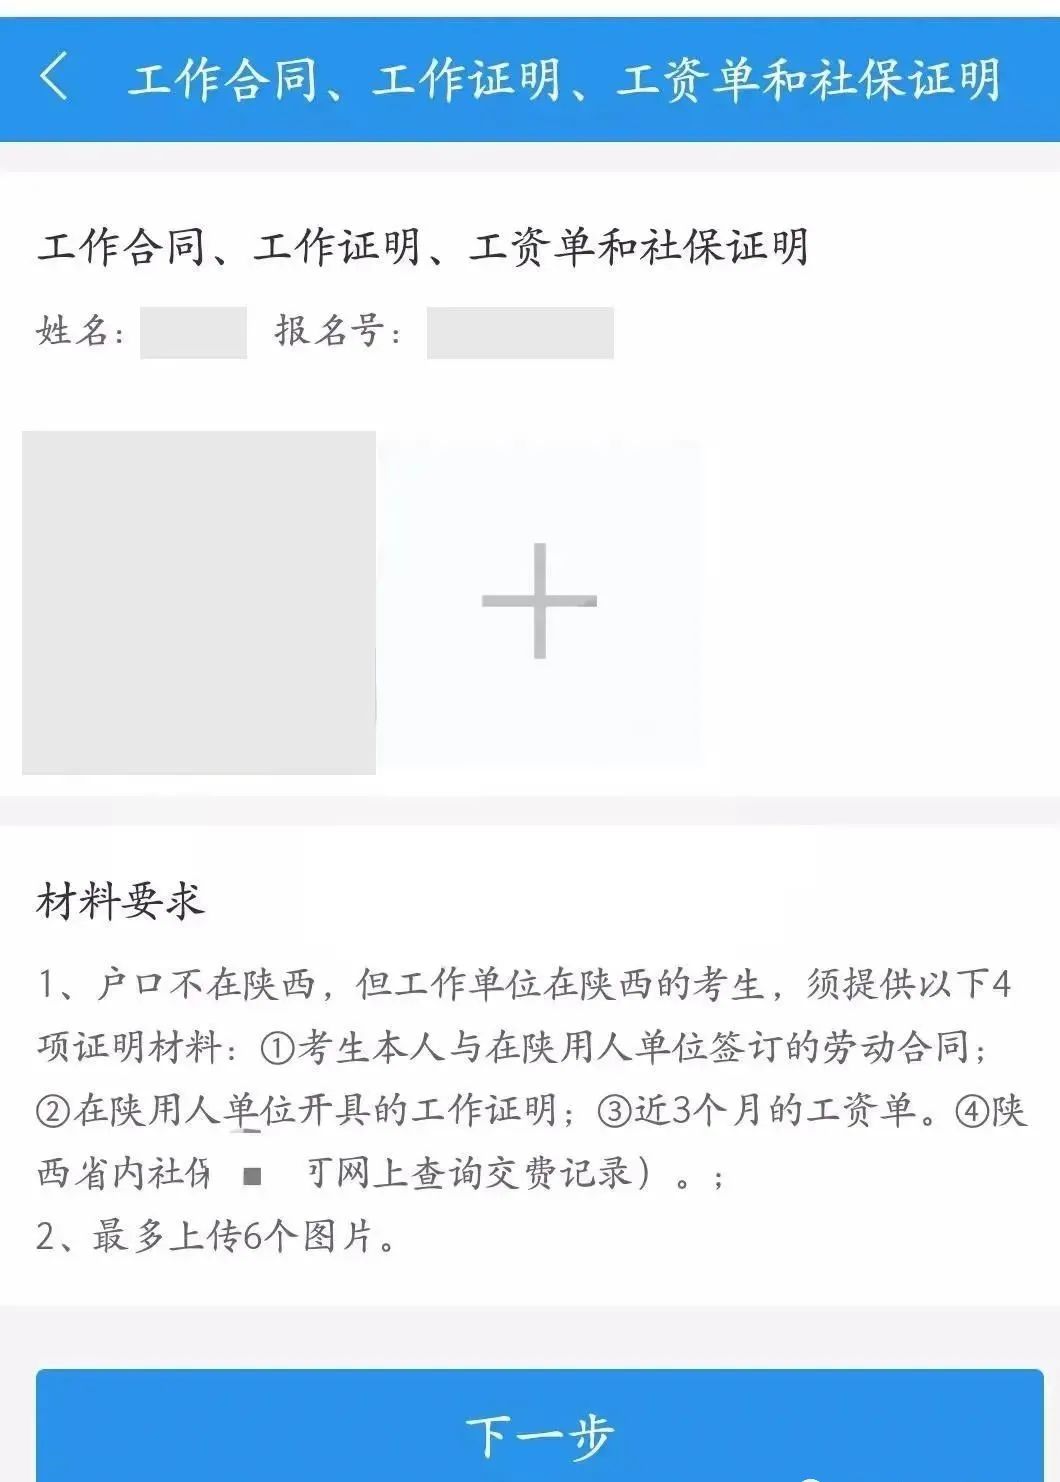 23考研上海在职学员网上确认详细流程图一览